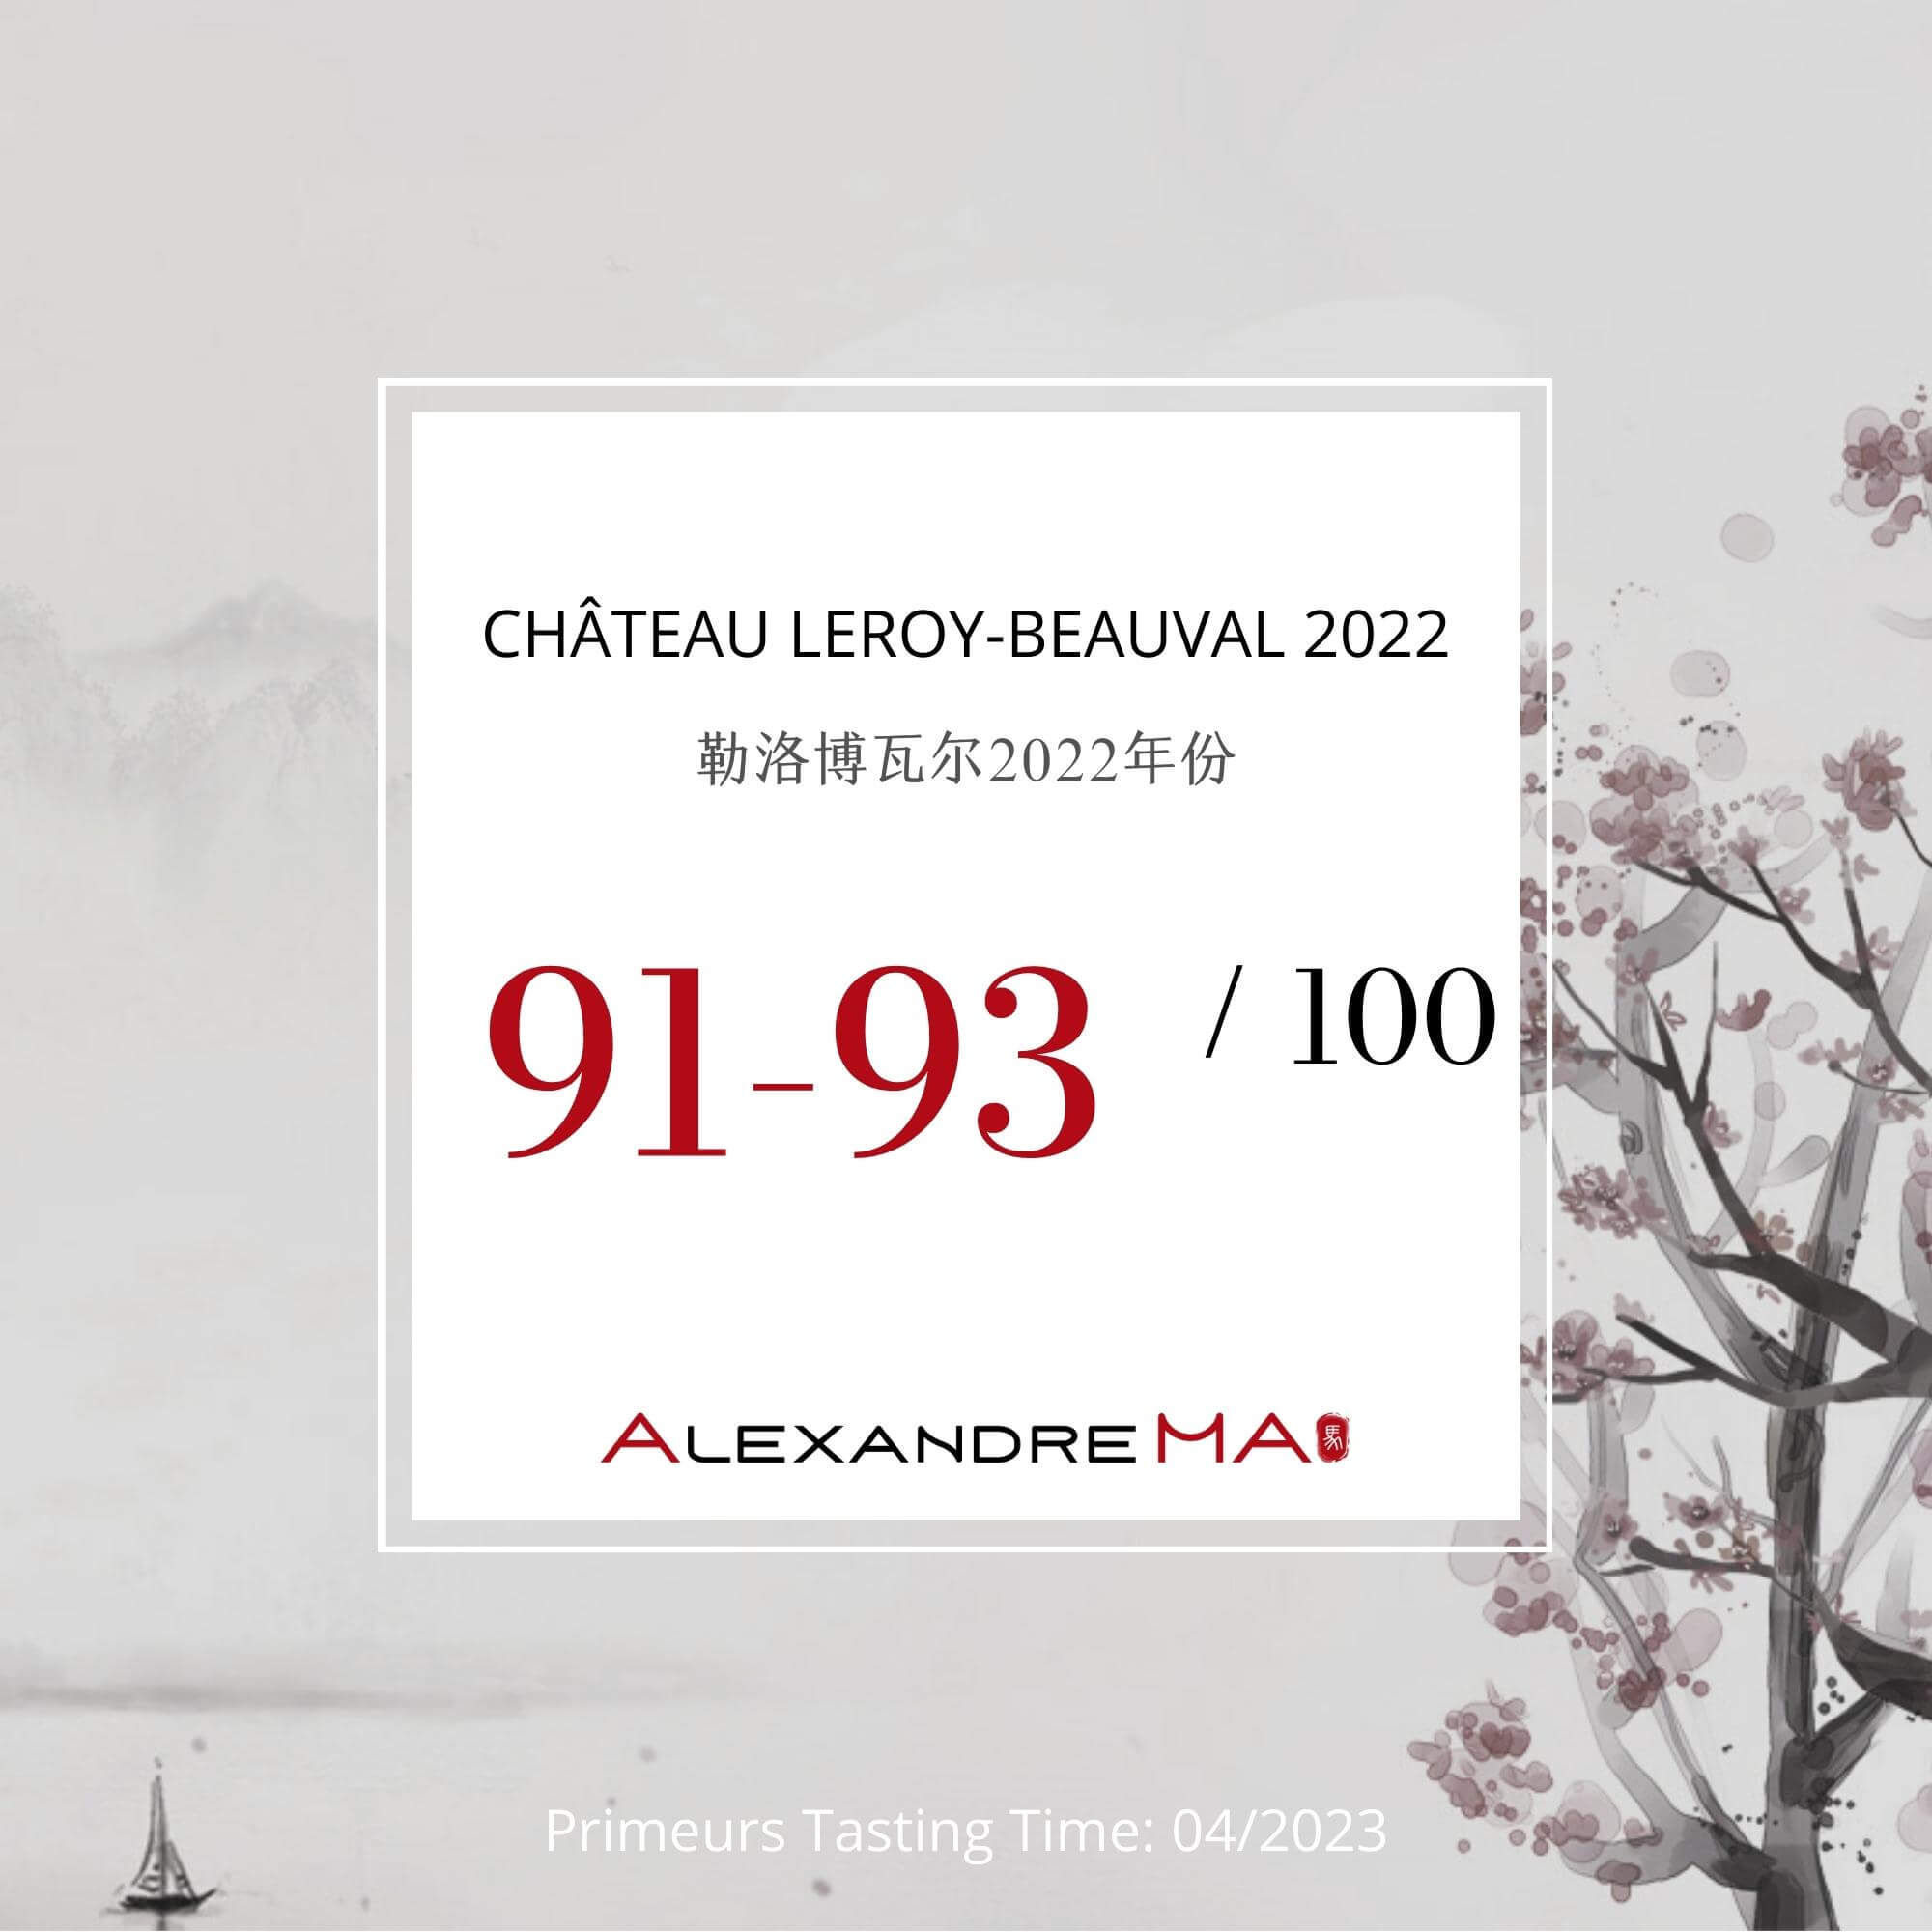 Château Leroy-Beauval 2022 Primeurs - Alexandre MA